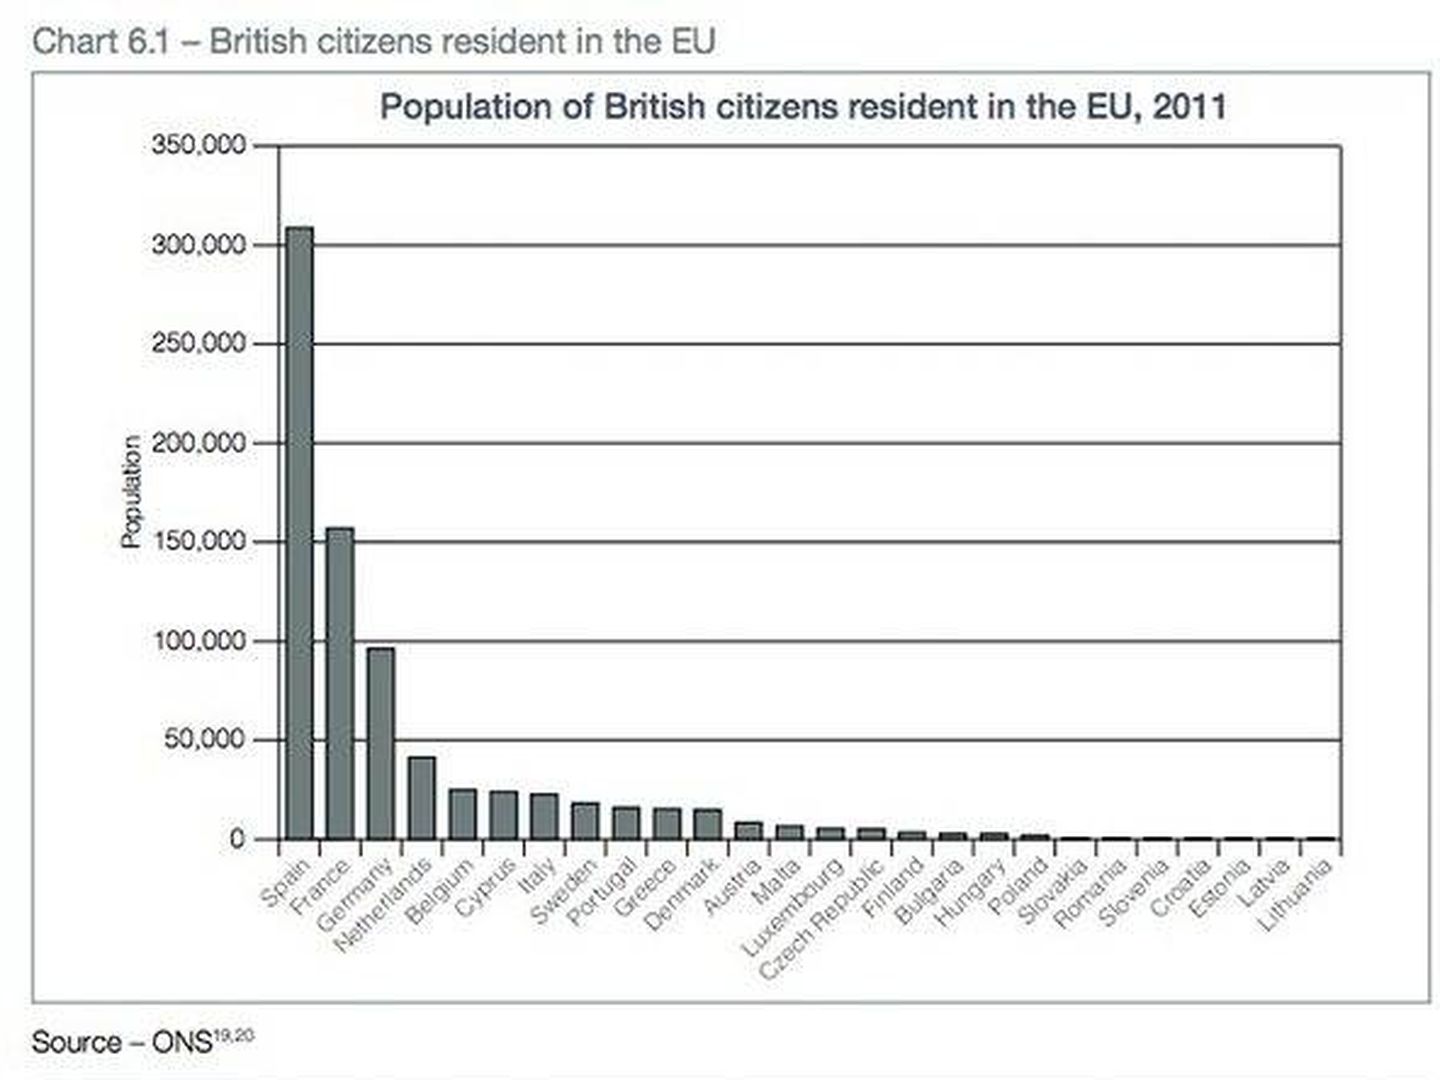 Gráfico sobre el número de ciudadanos británicos residentes en los países de la UE, incluido en el libro blanco.